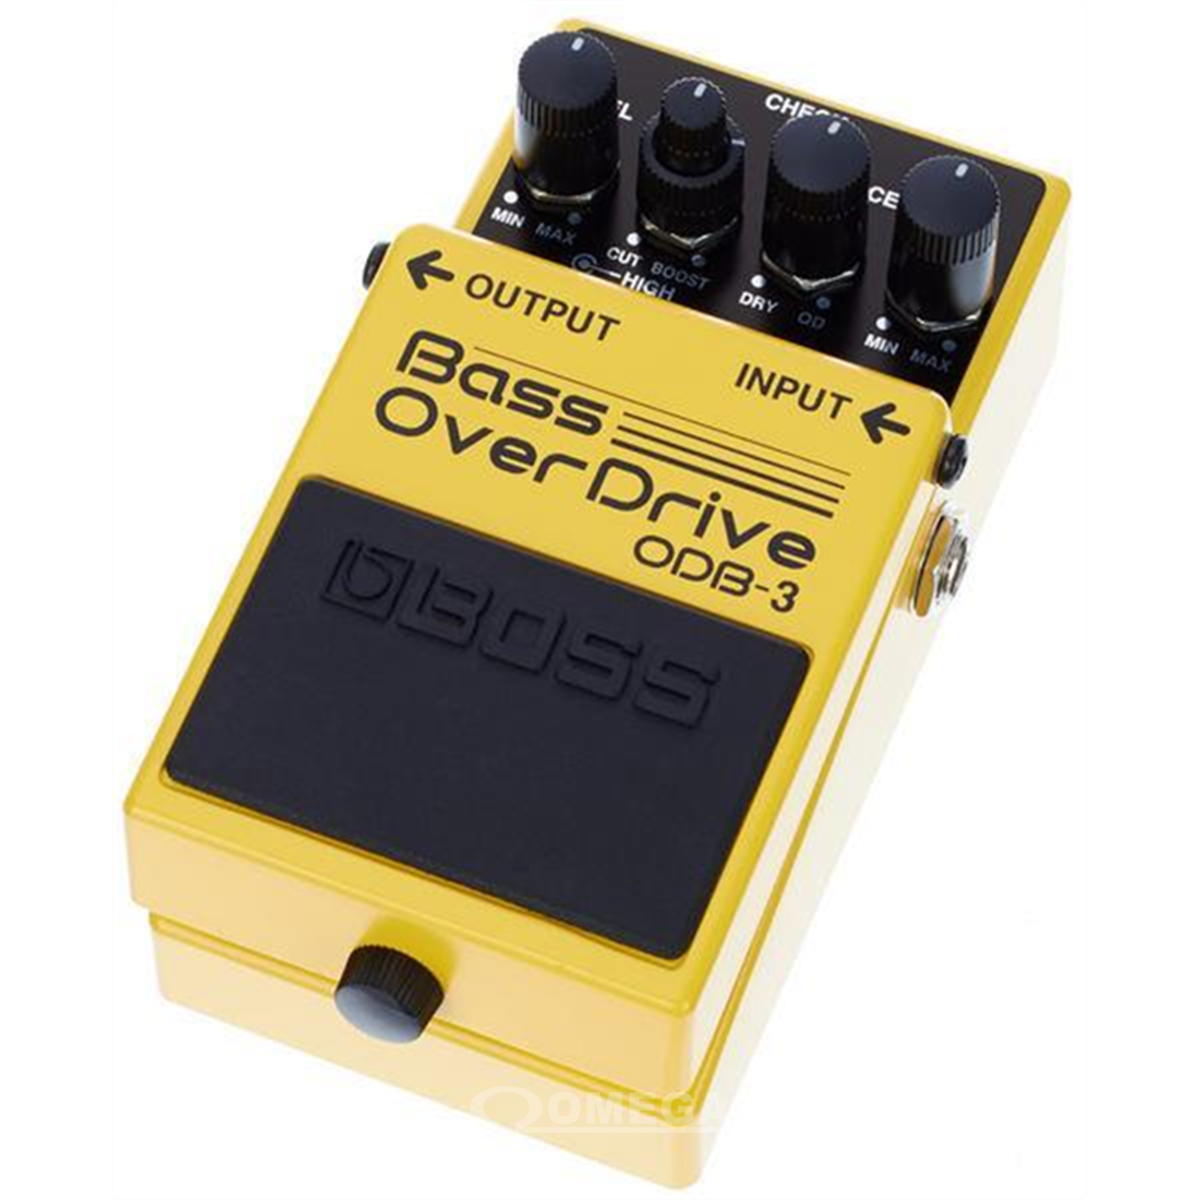 BOSS ODB-3 Bass Overdrive